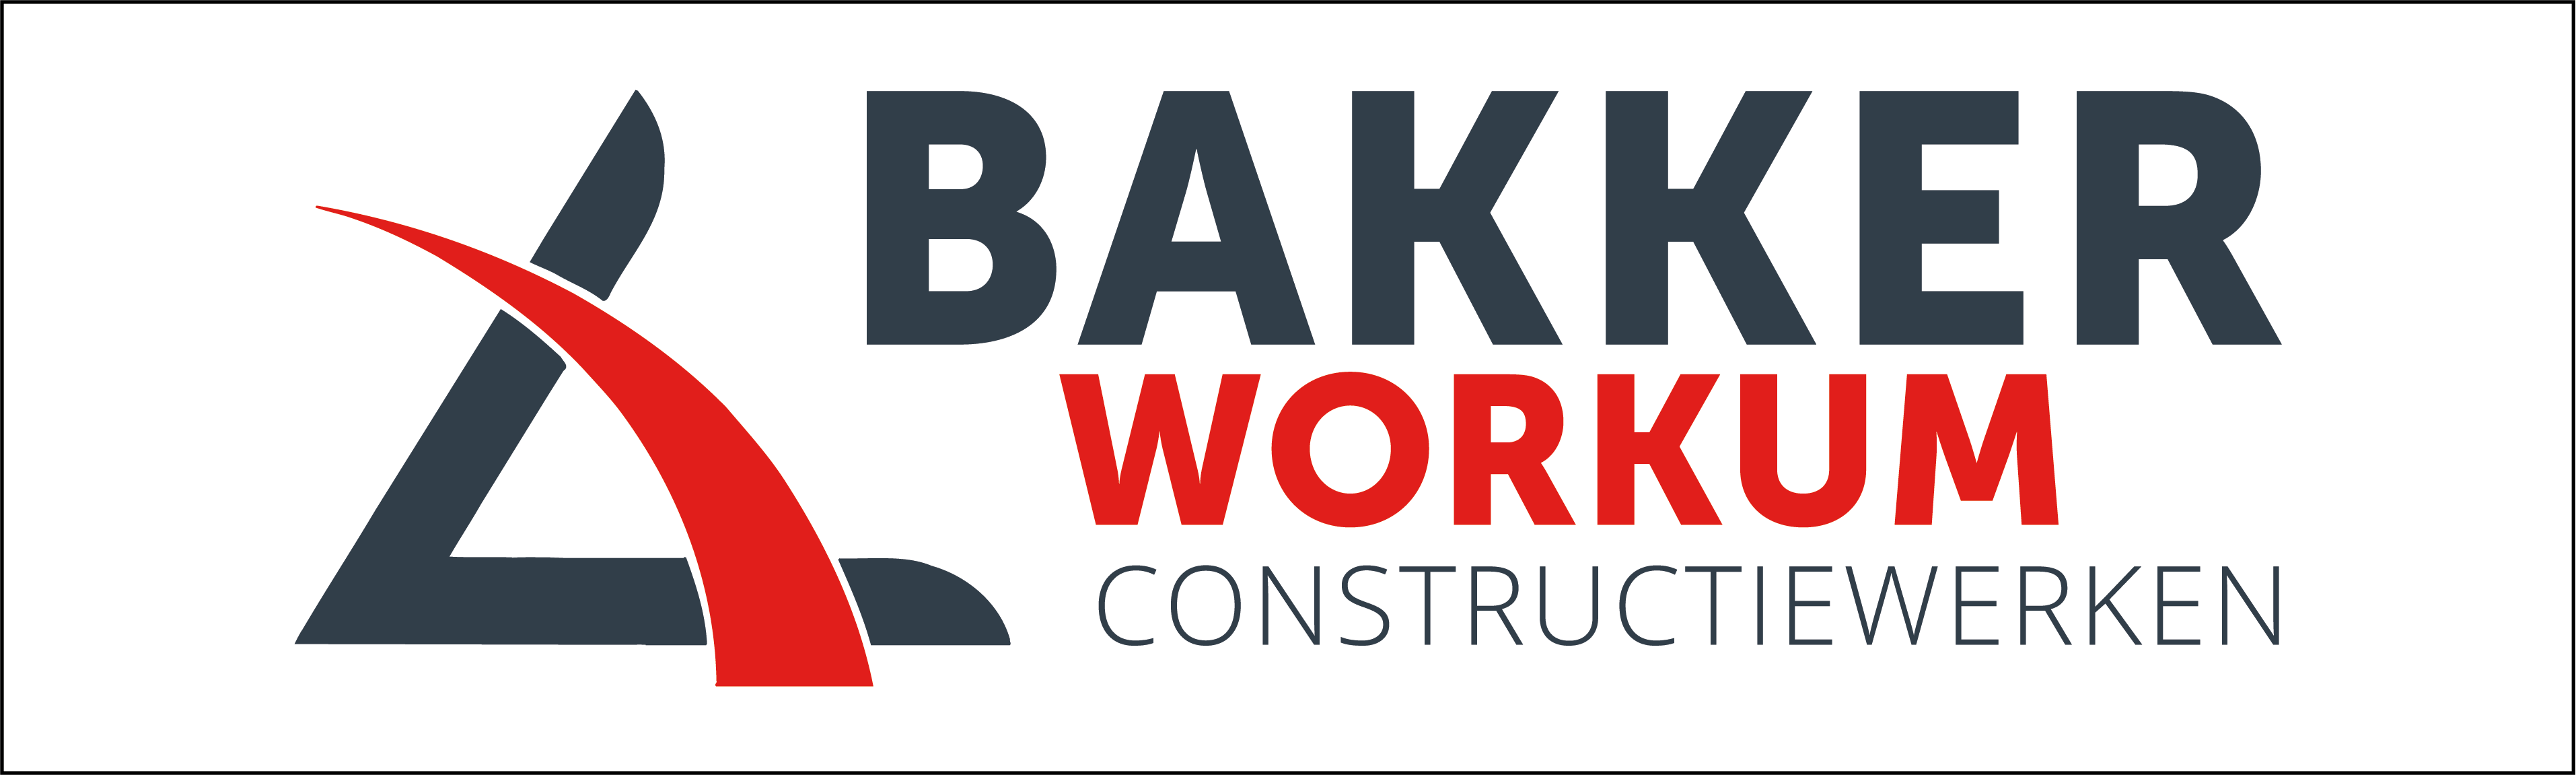 Staalconstructiebedrijf - Bakker Workum Constructiewerken